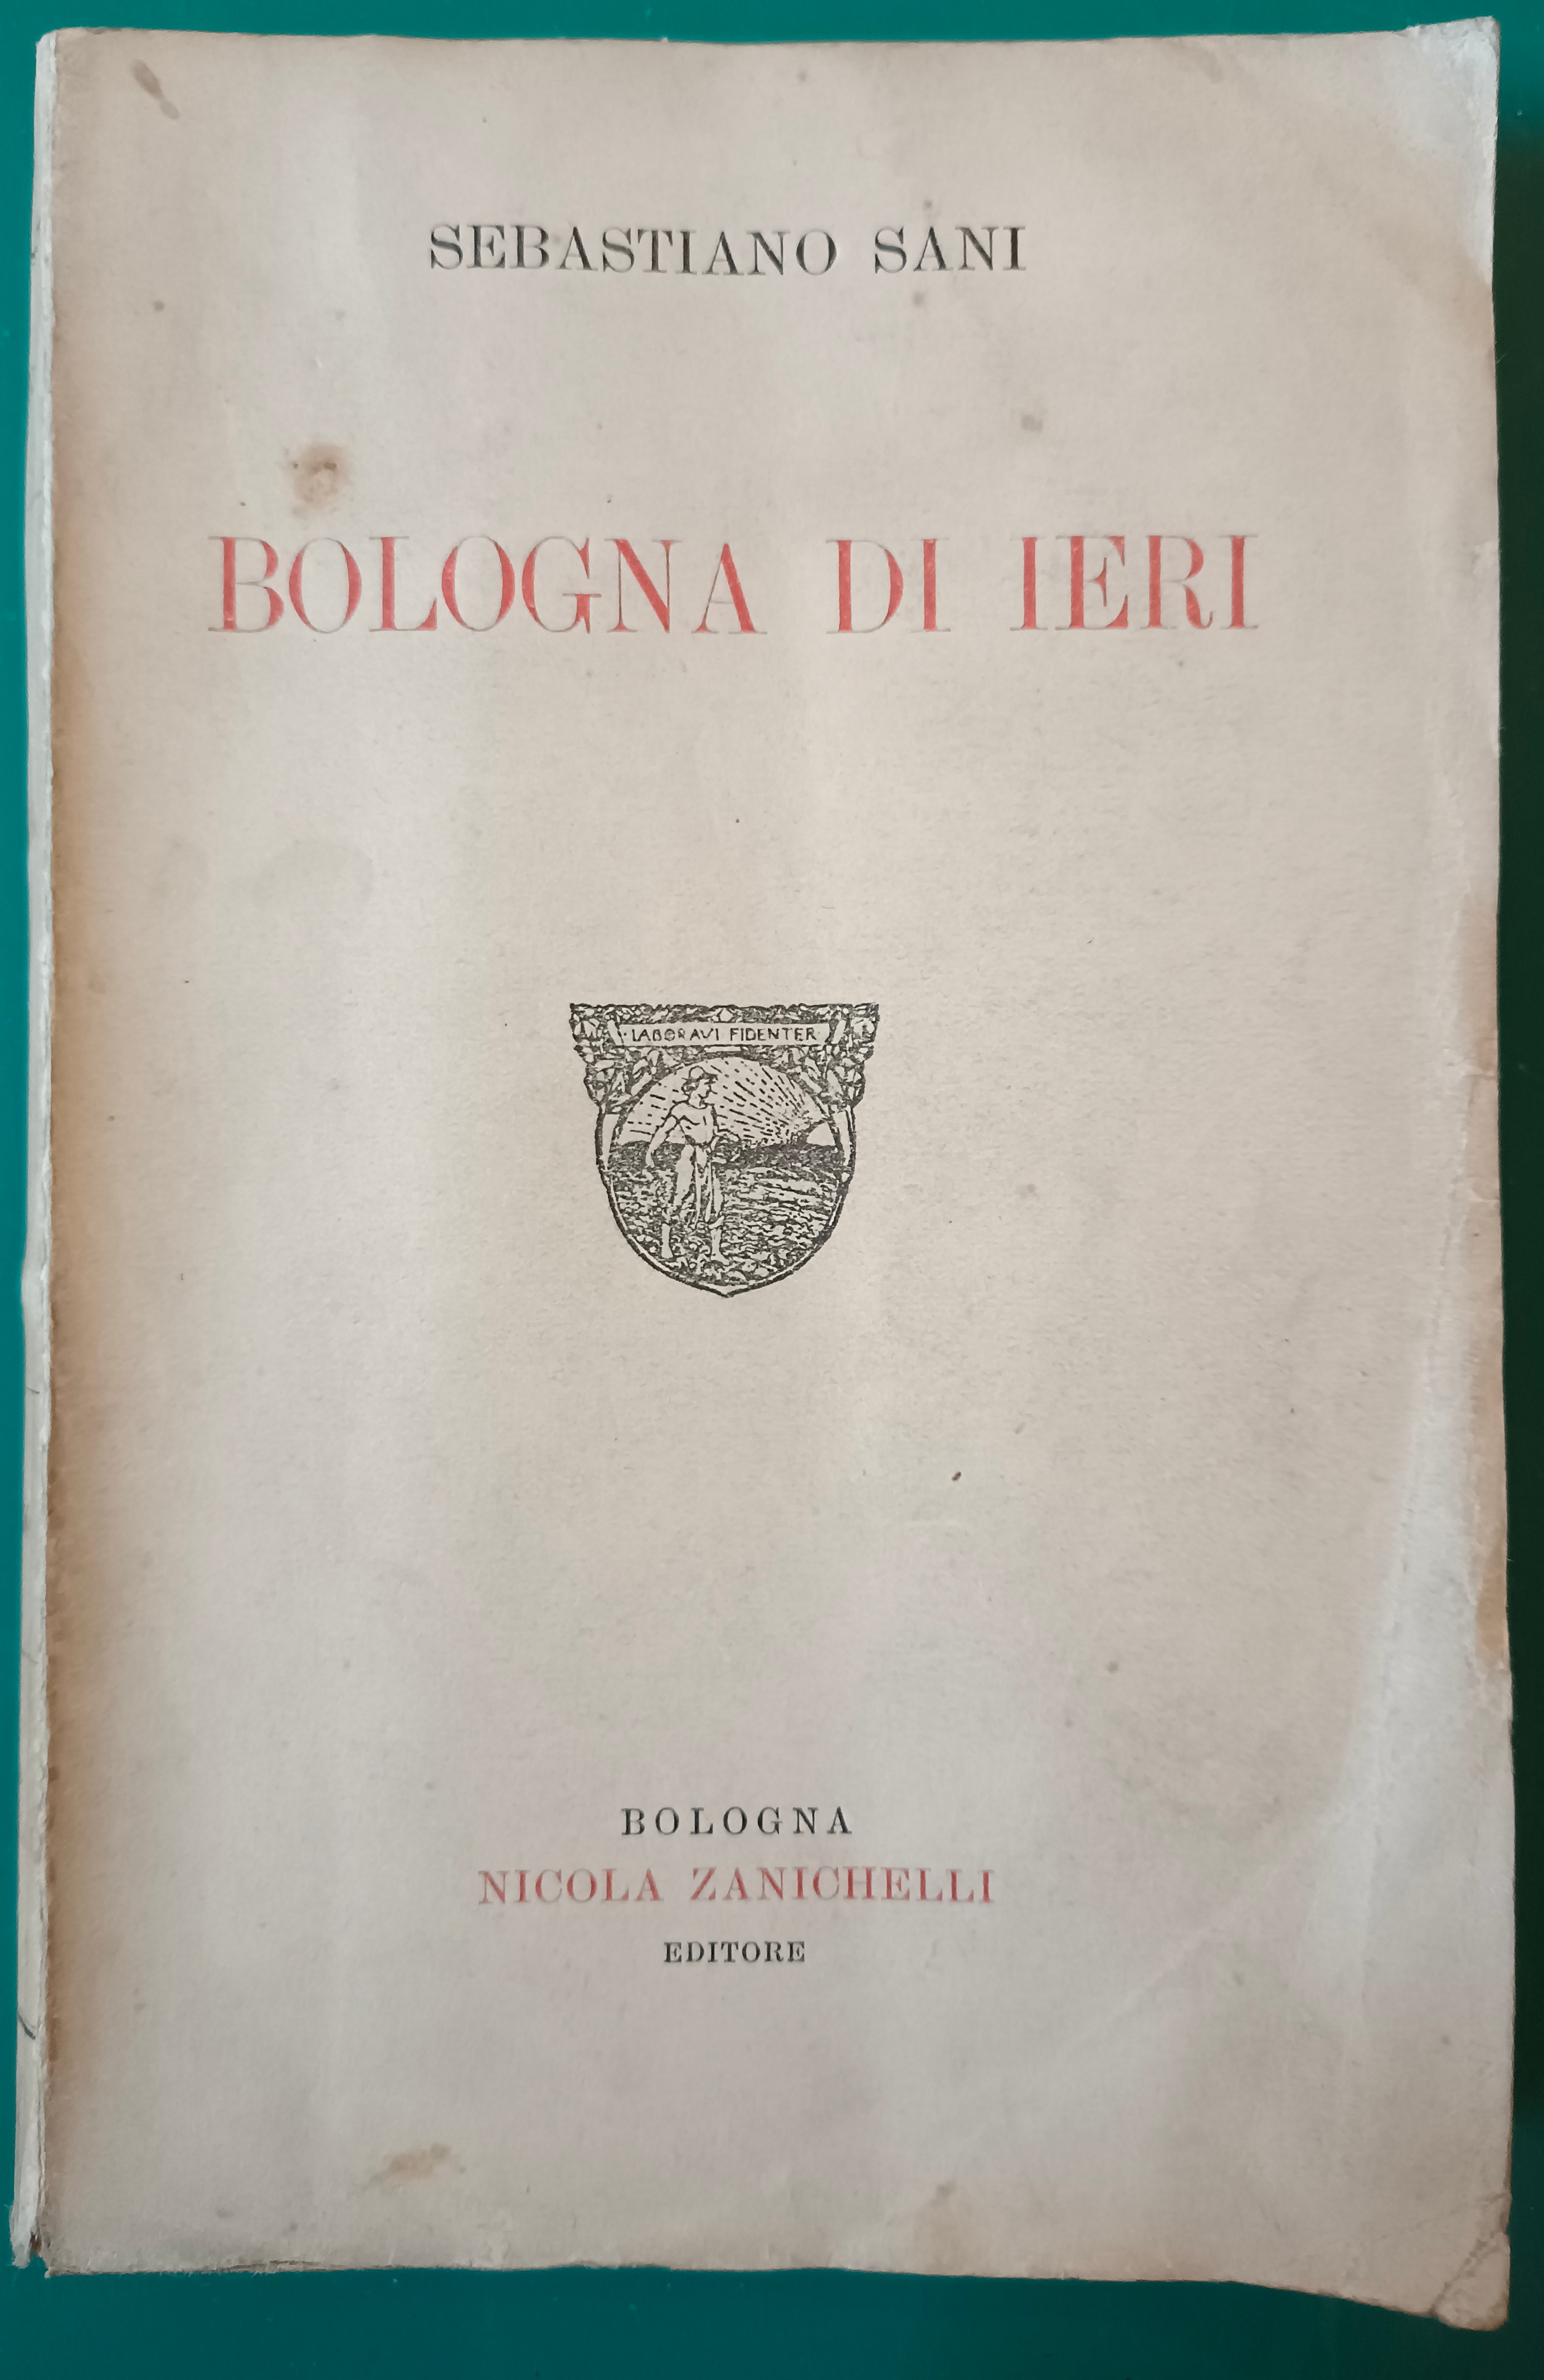 Sani Sebastiano - BOLOGNA DI IERI, Bologna, Nicola Zanichelli Editore, …